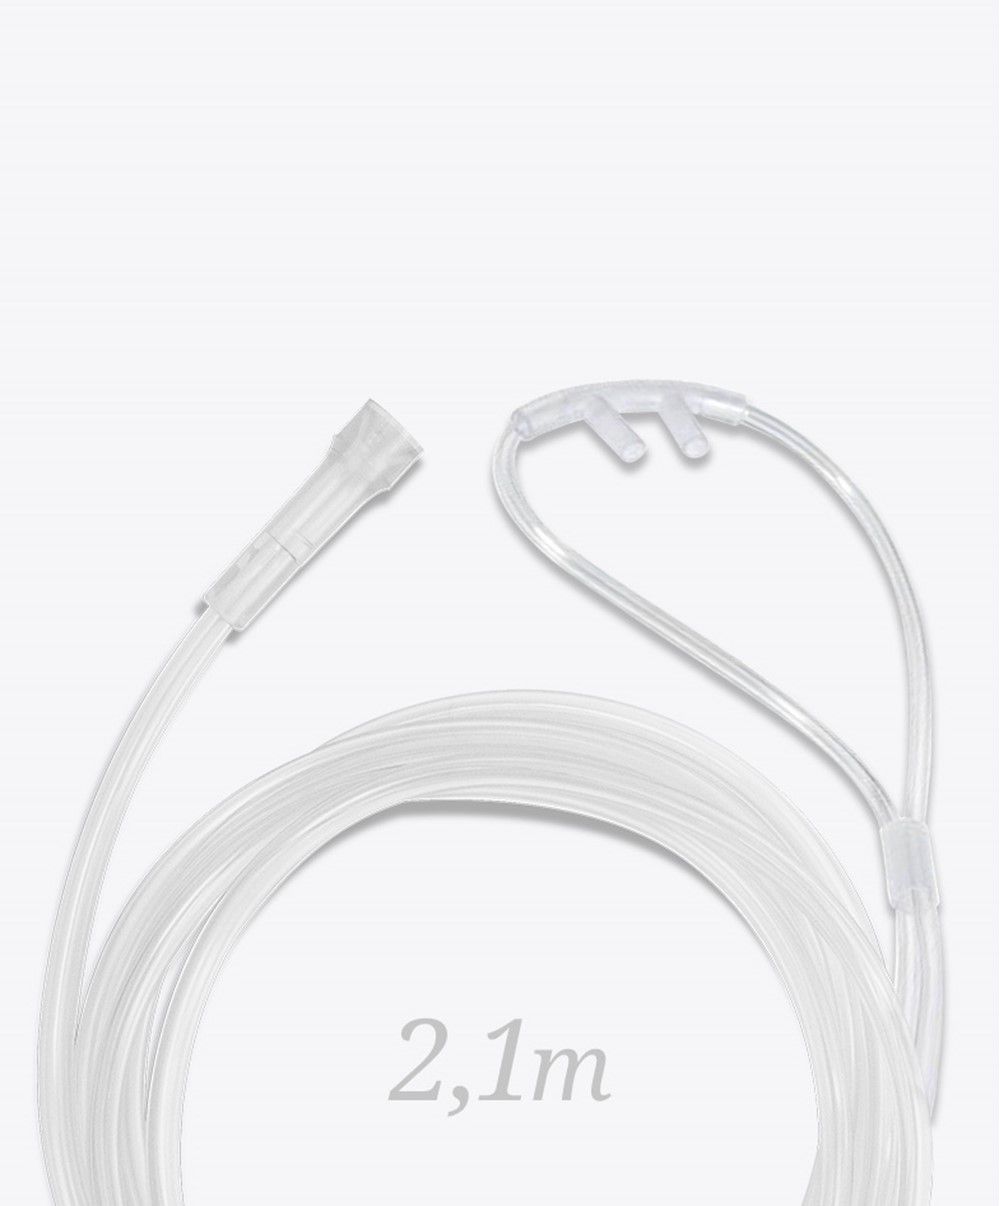 Kit Cilindro de Alumínio 4.6L + Regulador Medicinal + Cânula Nasal Adulto  - CPAPSTORE